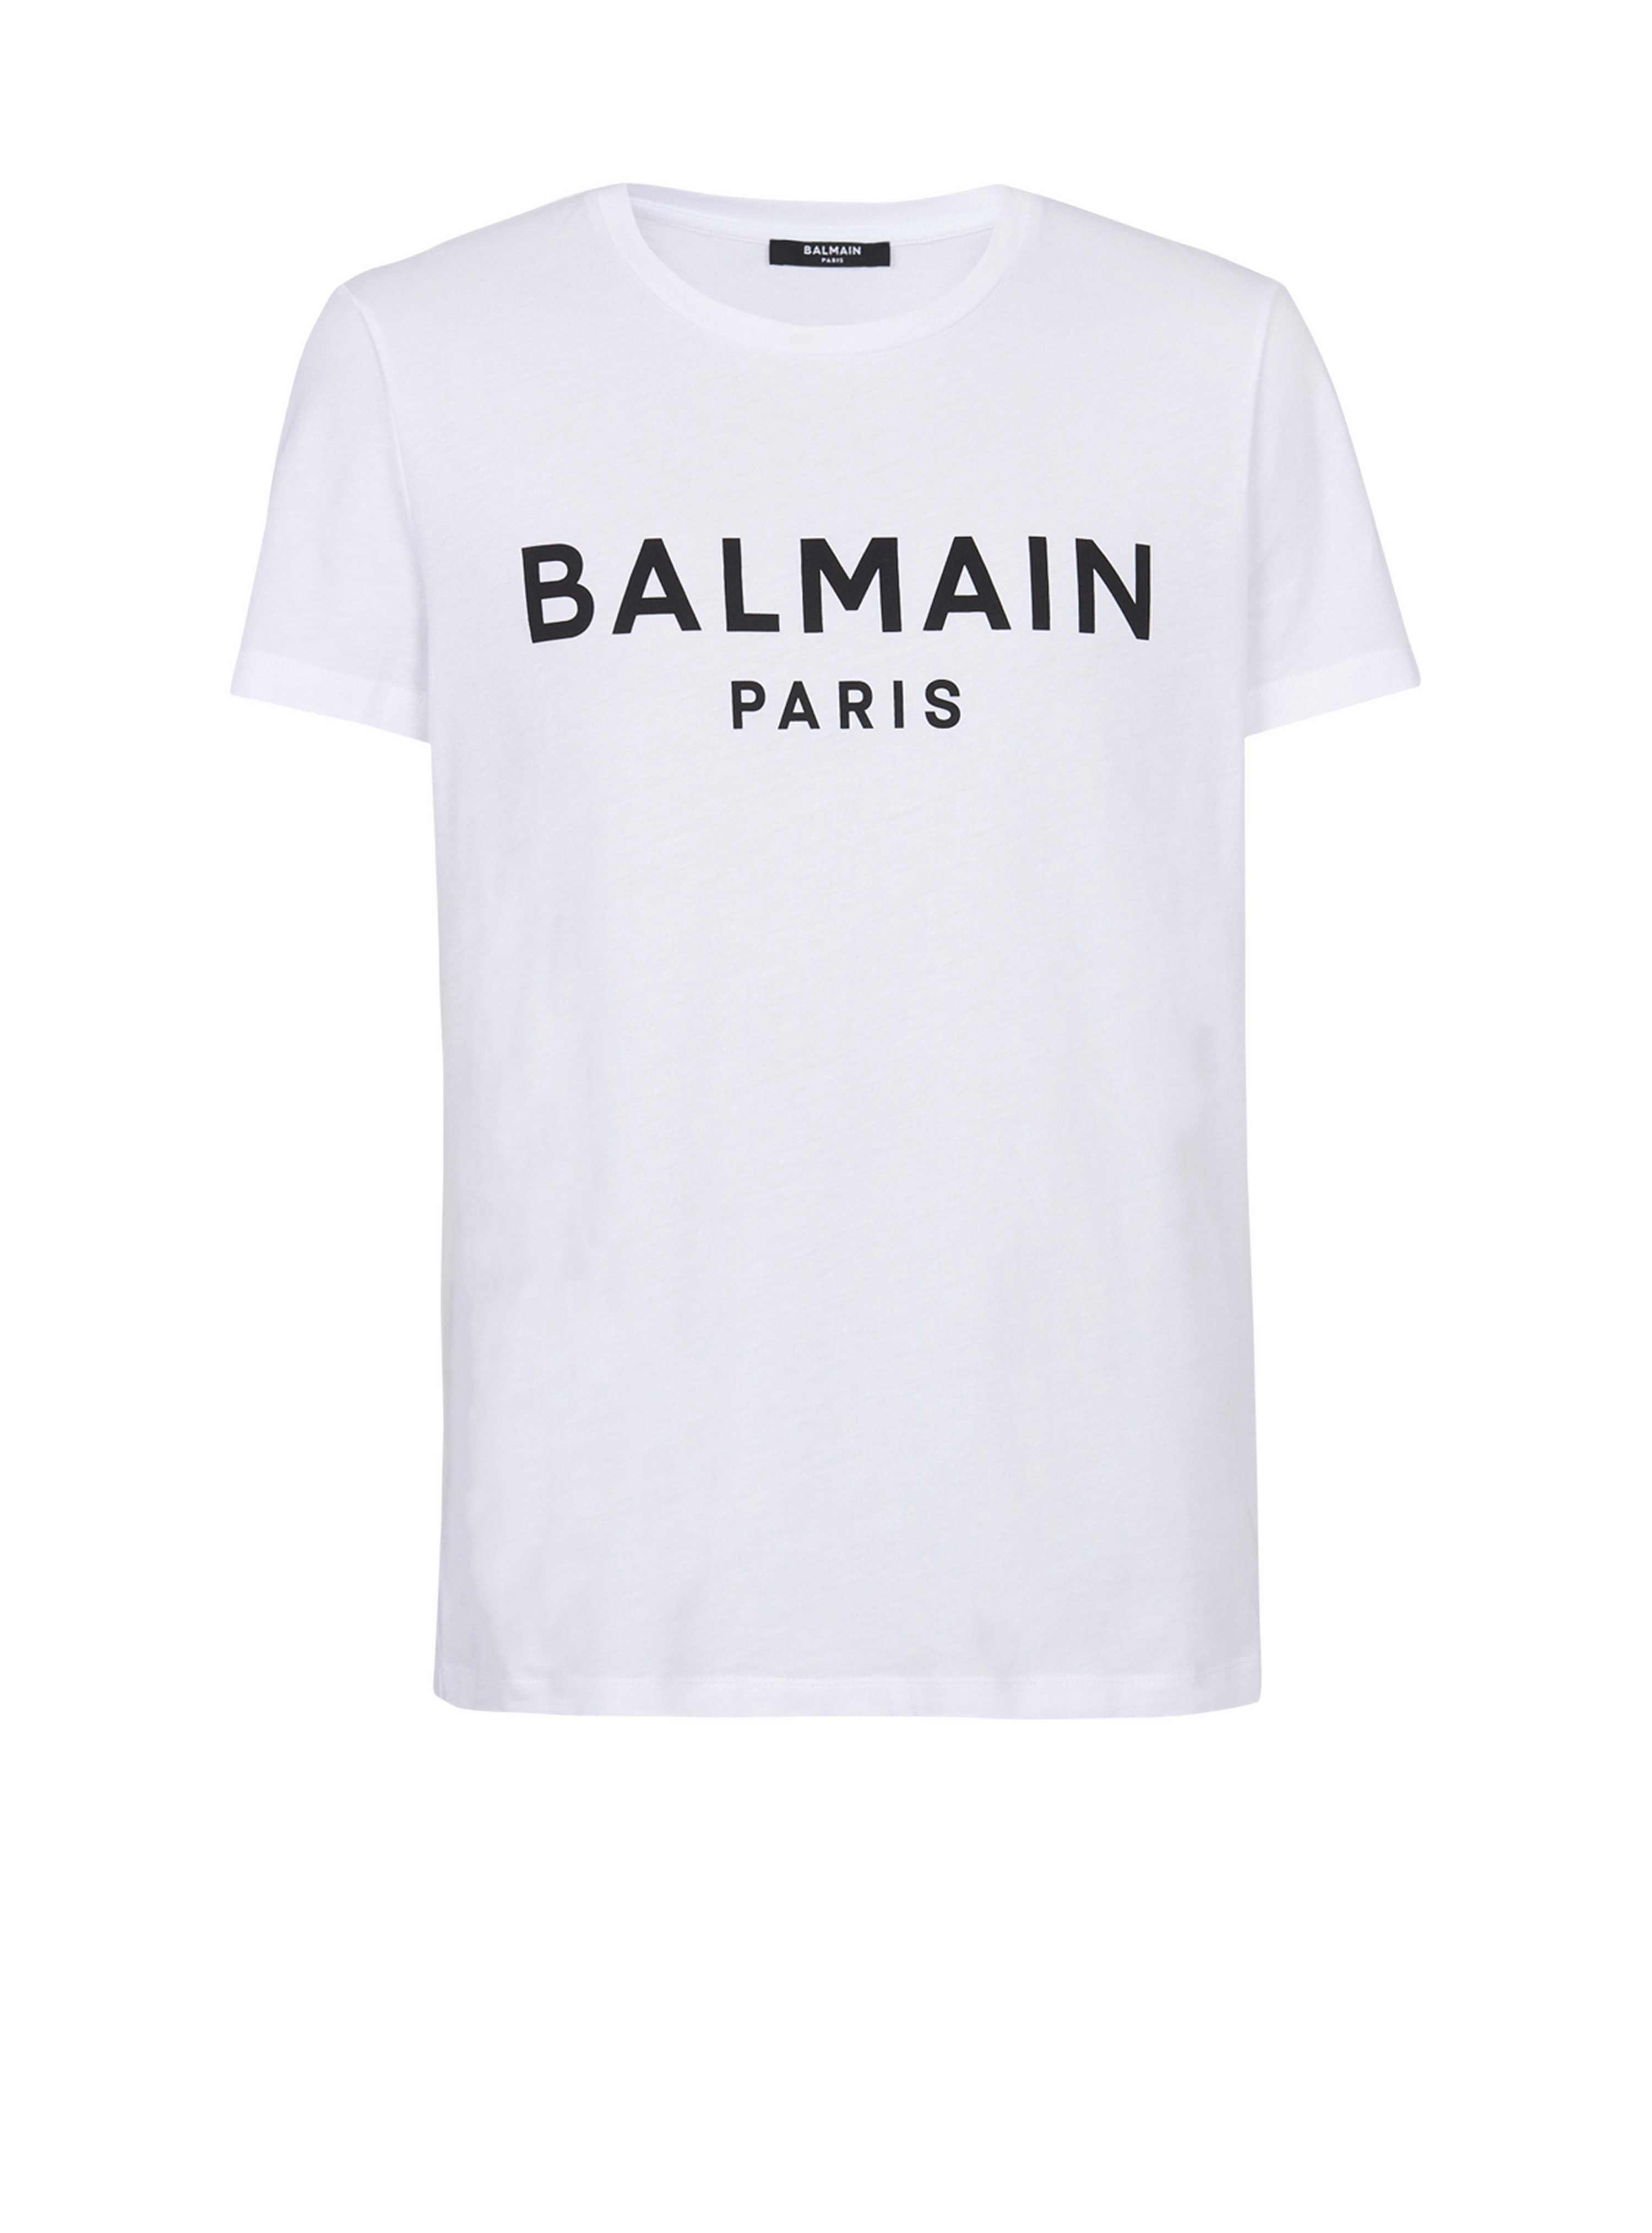 Camiseta de algodón con estampado del logotipo Balmain Paris, blanco